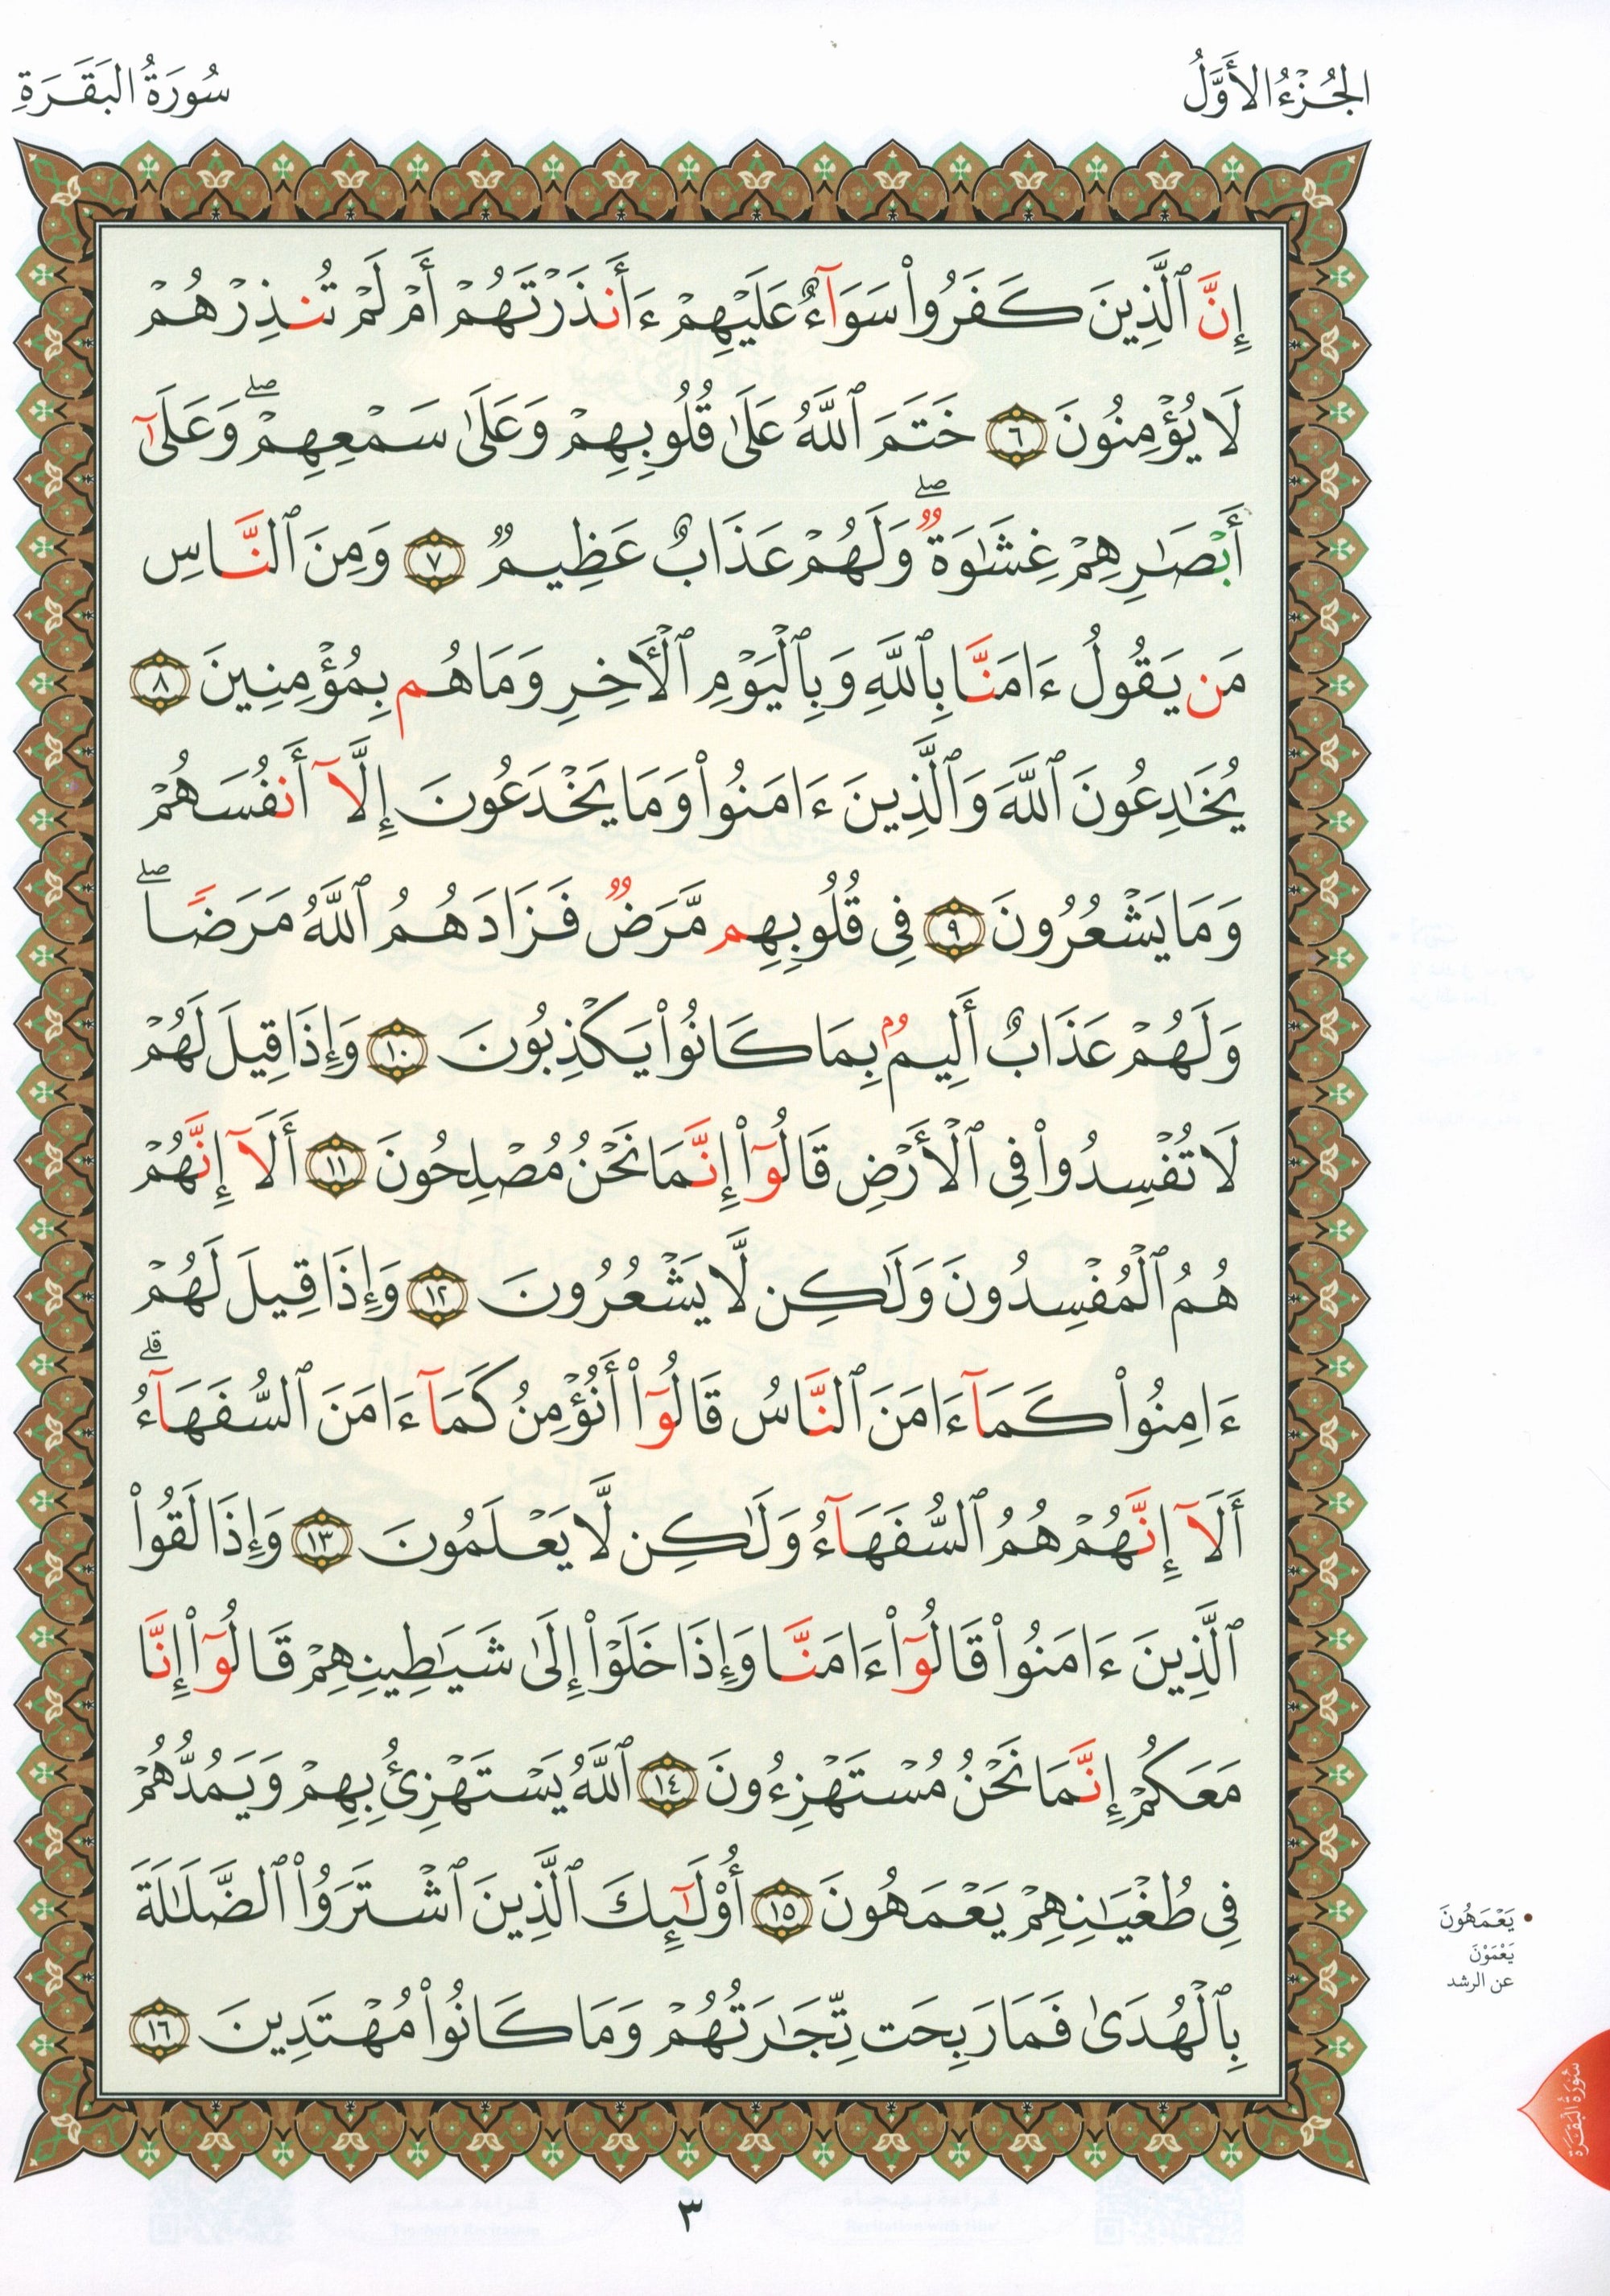 Al-Qaidah An-Noraniah - First Zahraa Suratul Baqara Large 7 x 9 القاعدة النورانية وتطبيقاتها على الزهراء الأولى (سورة البقرة)